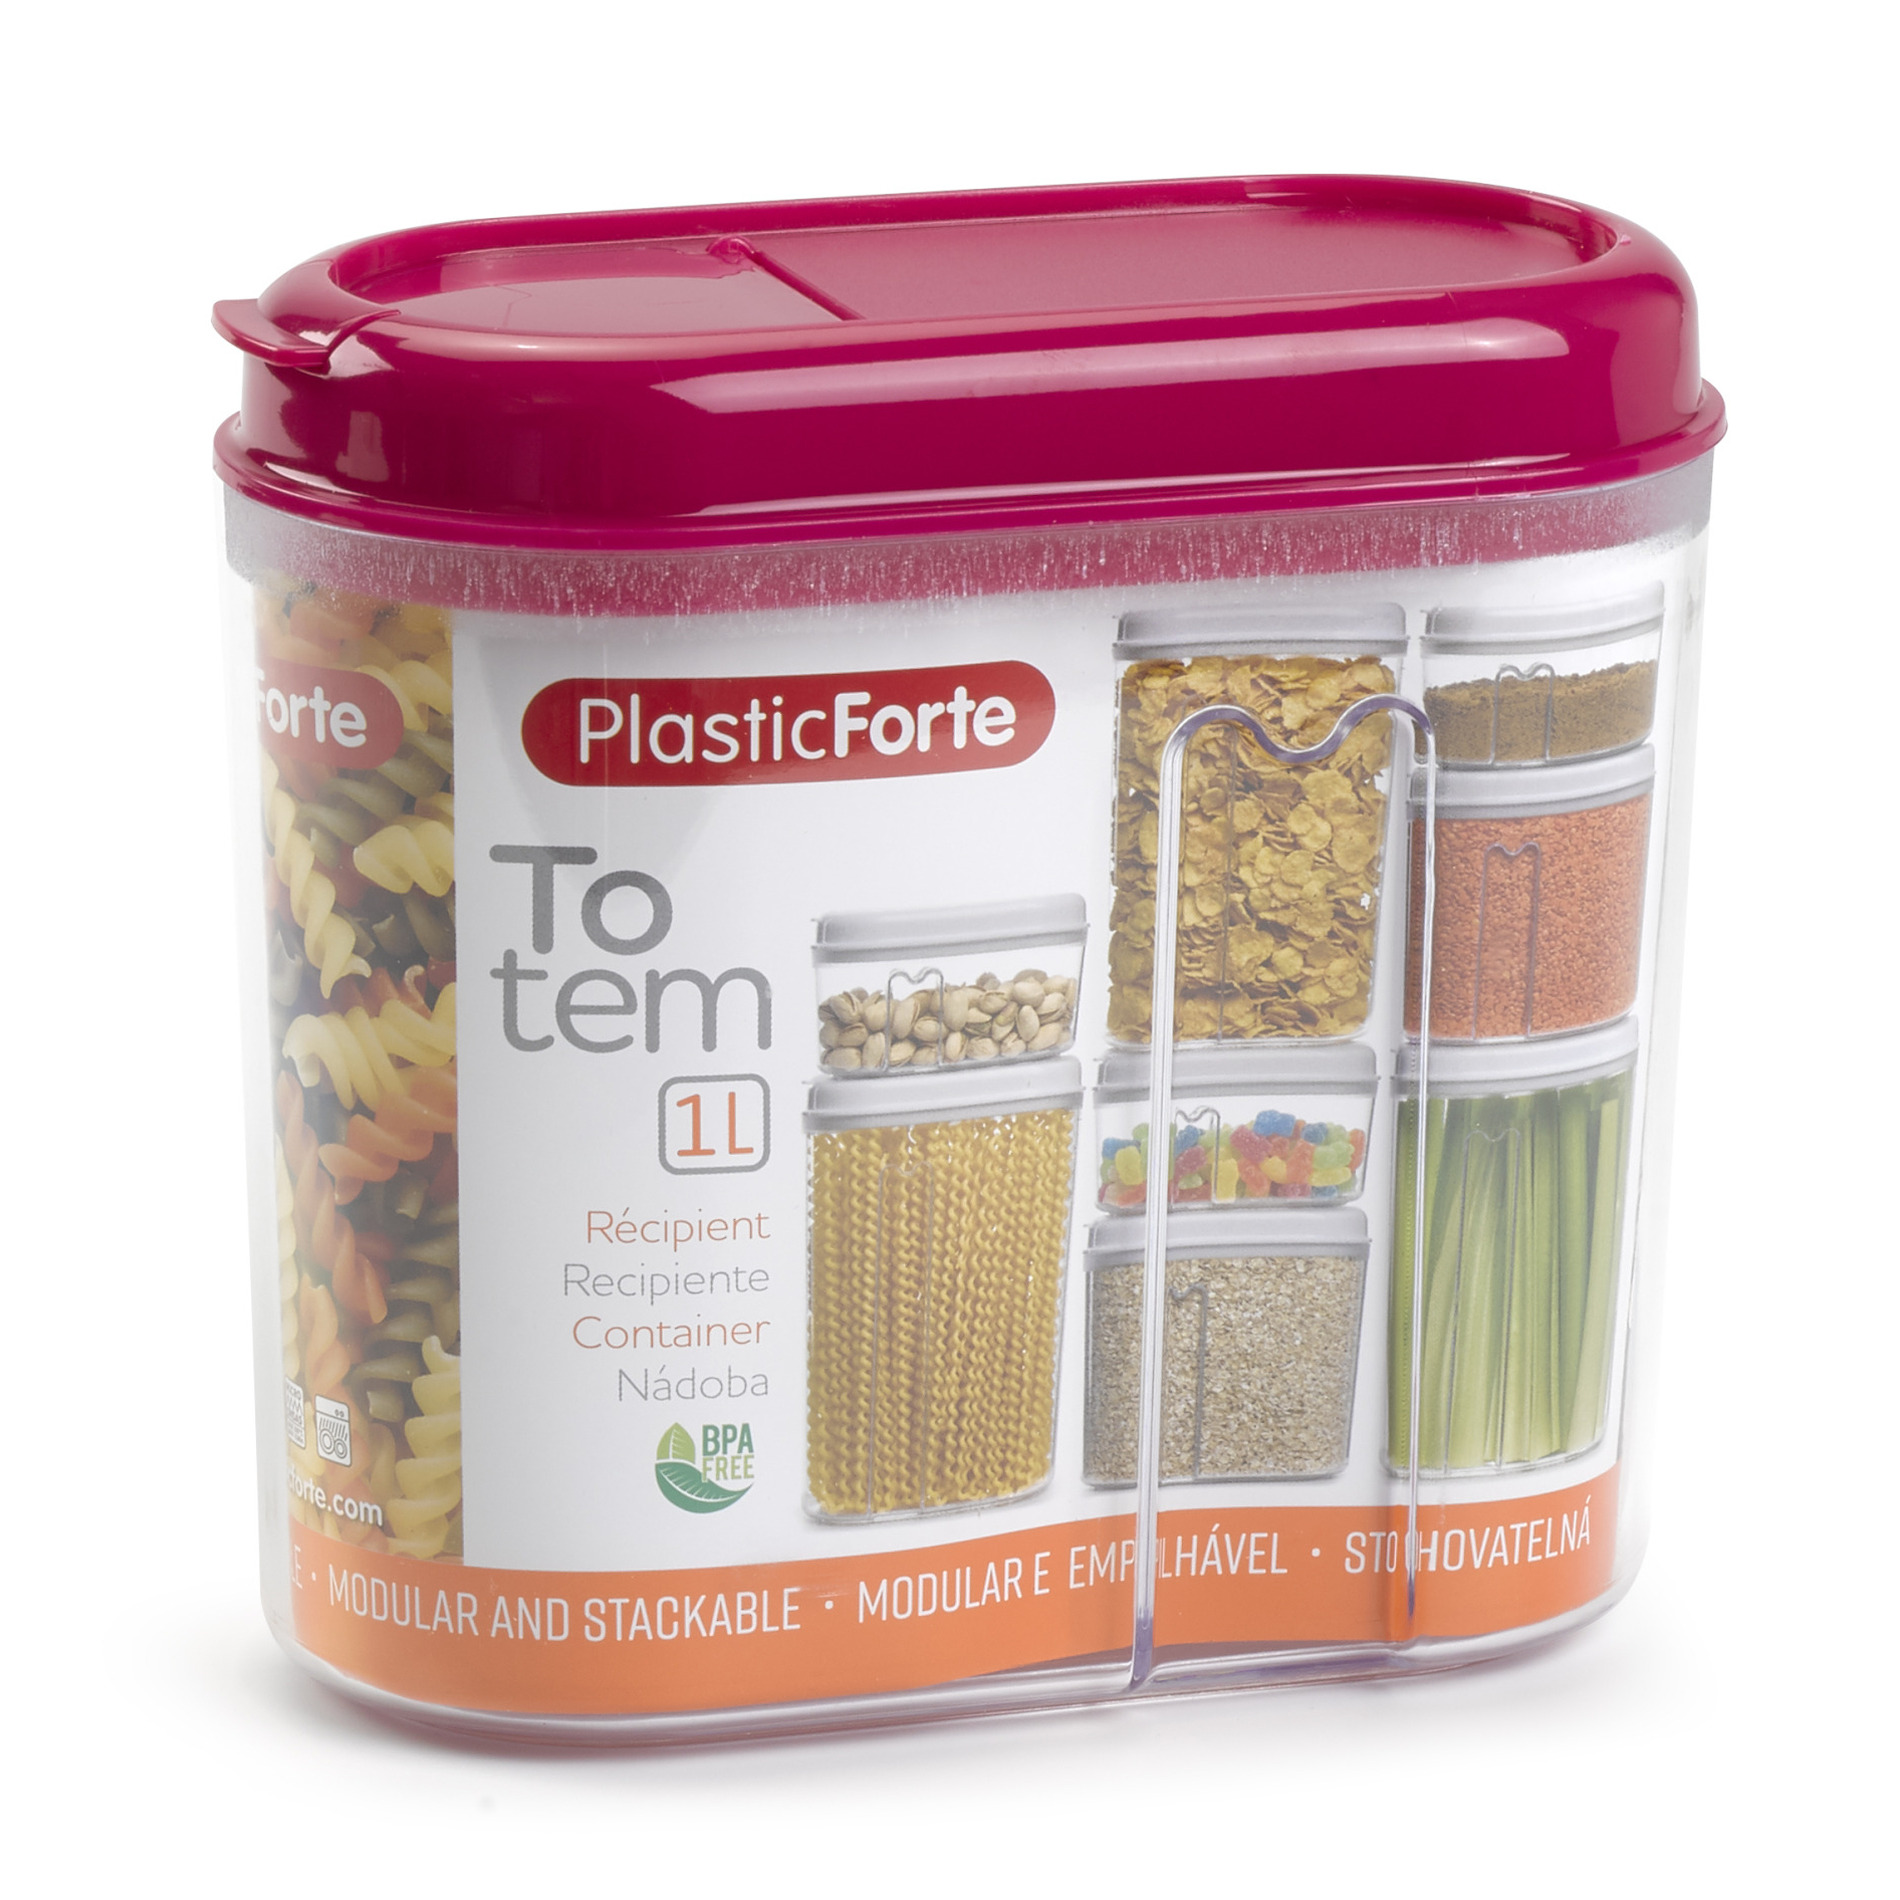 PlasticForte Voedselcontainer strooibus - roze - 1000 ml - kunststof - 15 x 8 x 14 cm - voorraadpot -